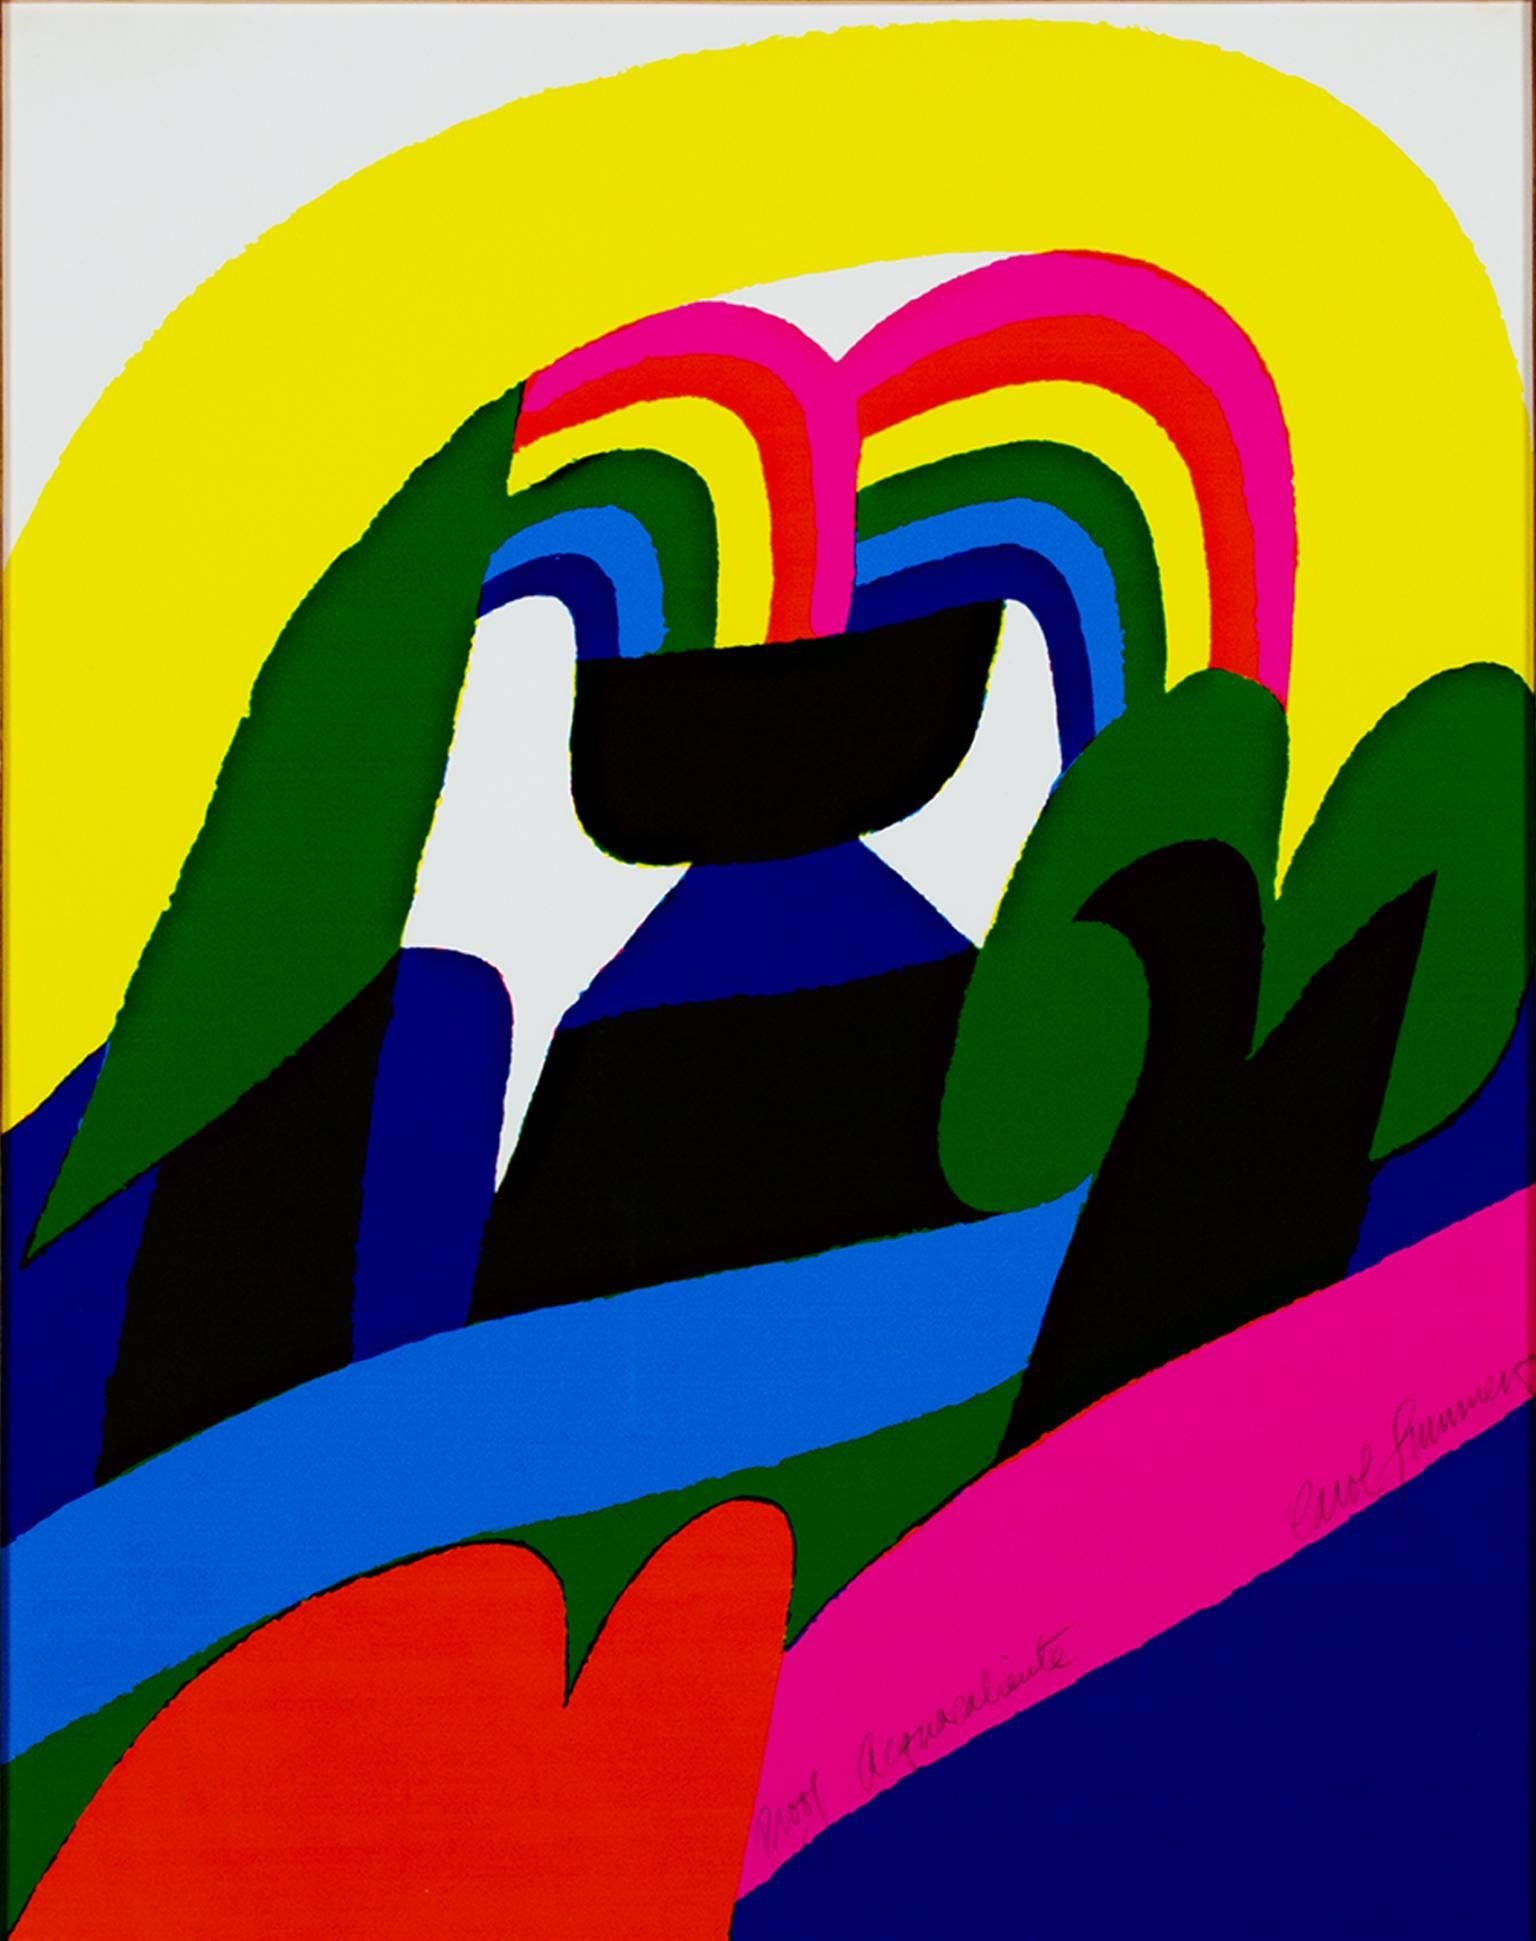 "Acquacaliente" est une gravure sur bois originale en couleur de Carol Summers. L'artiste a signé l'œuvre en bas à droite. Cette gravure sur bois représente une fontaine faisant jaillir des arcs-en-ciel à l'arrière-plan d'un paysage coloré. Il